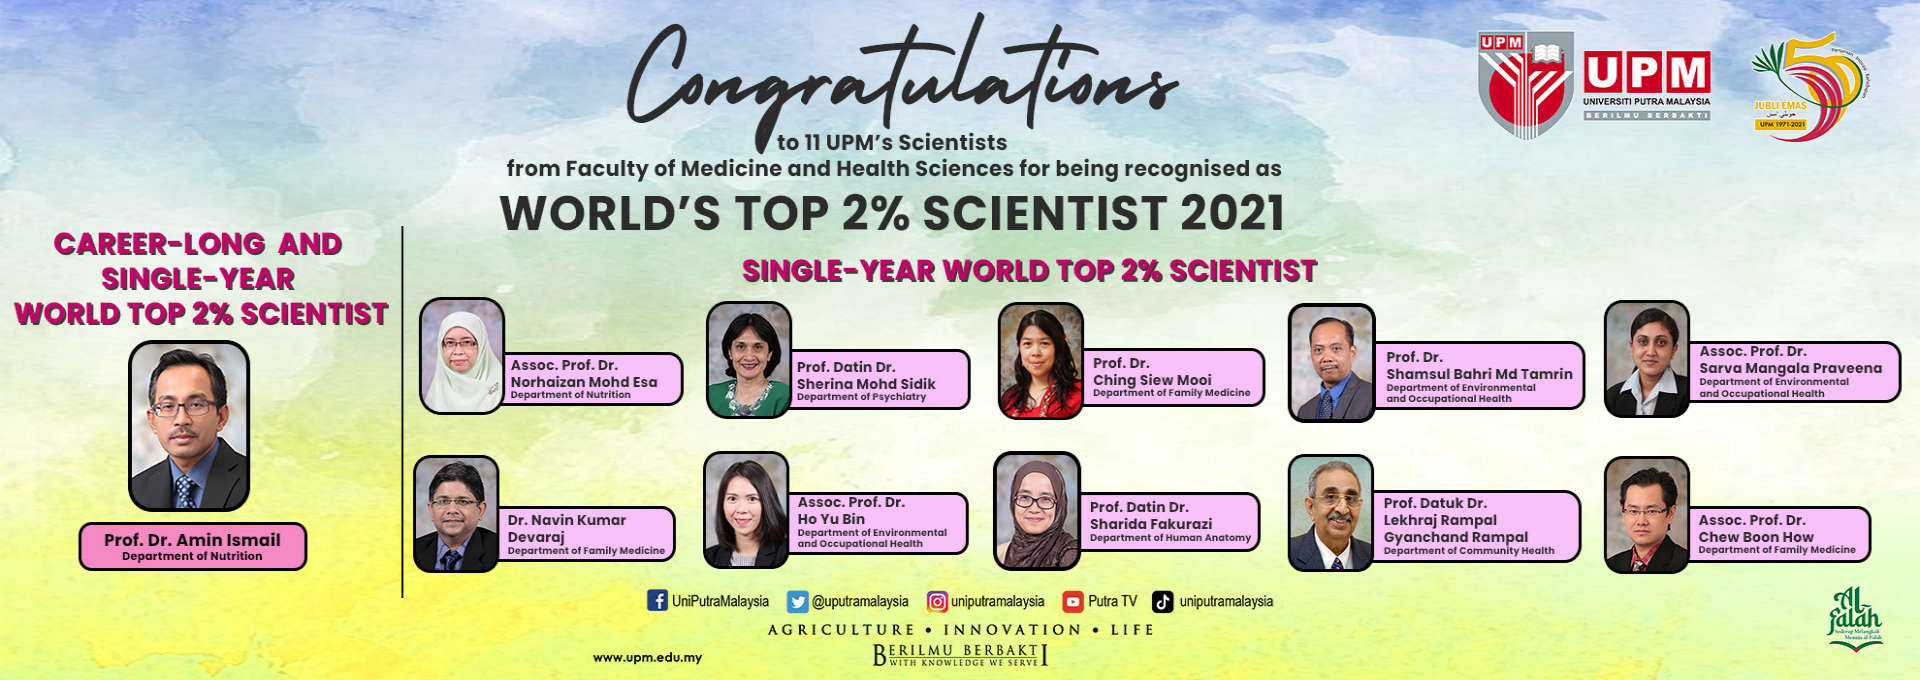 World's Top 2% Scientist 2021